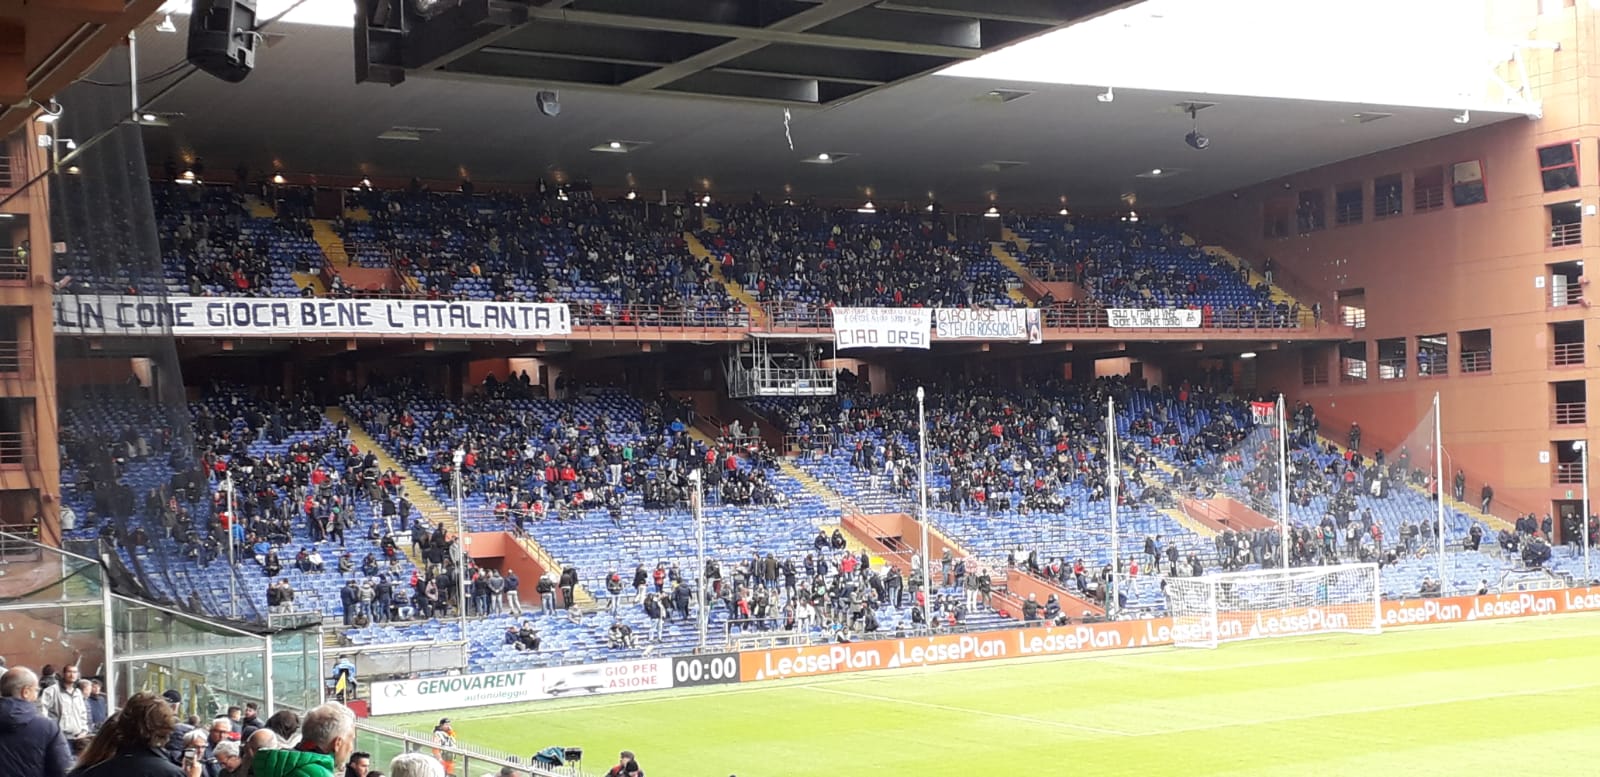 Genoa, il dubbio dei tifosi: protesta ad oltranza o tregua per la salvezza?